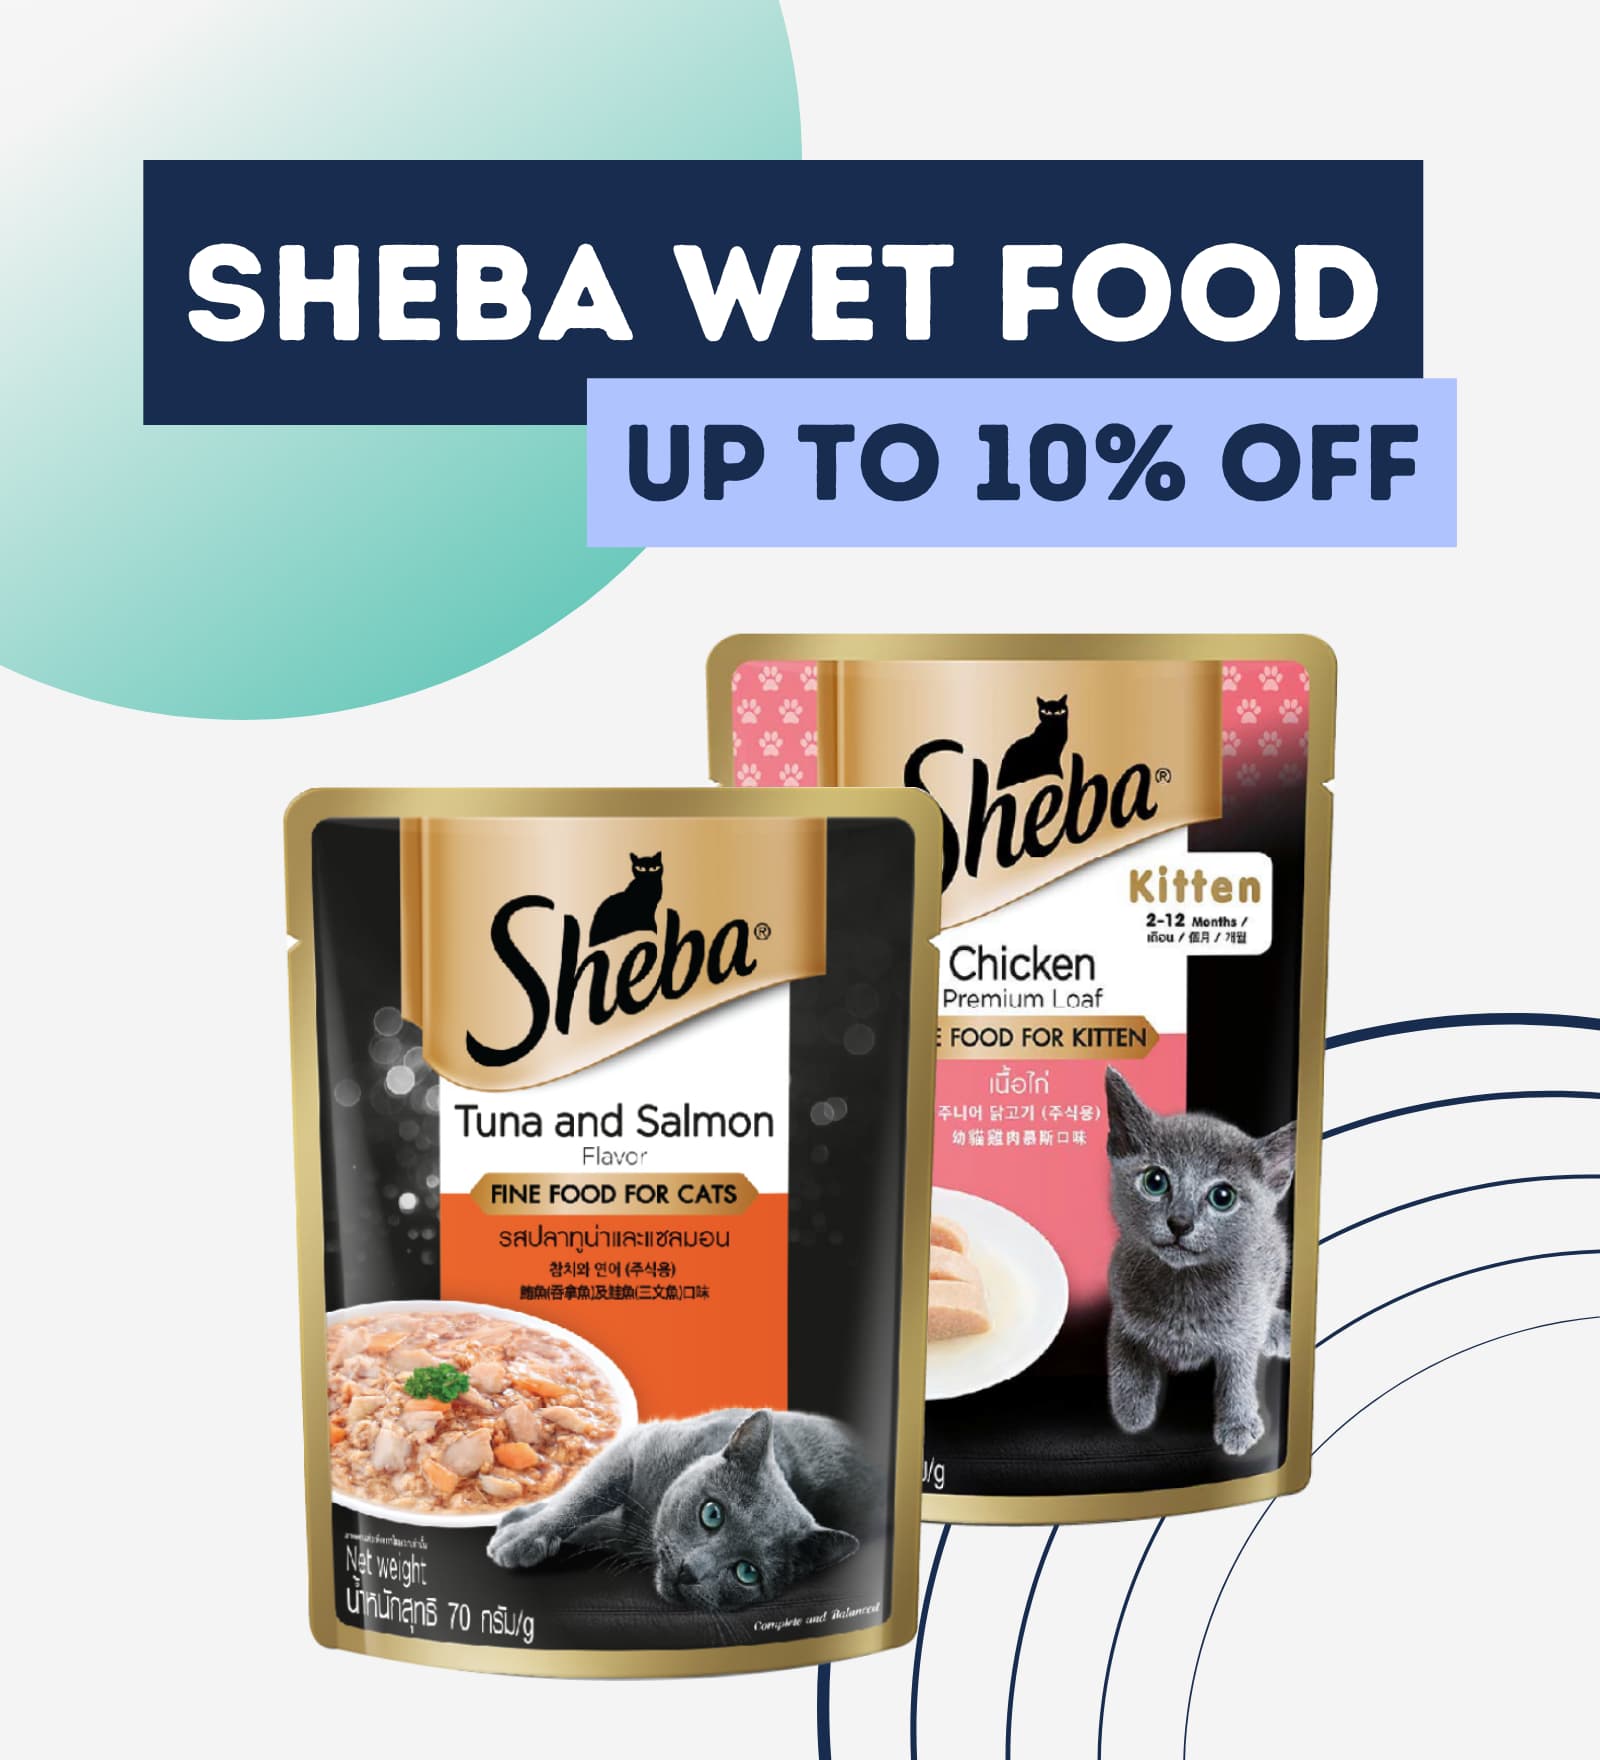 deal on sheba wet food- upto 10% off